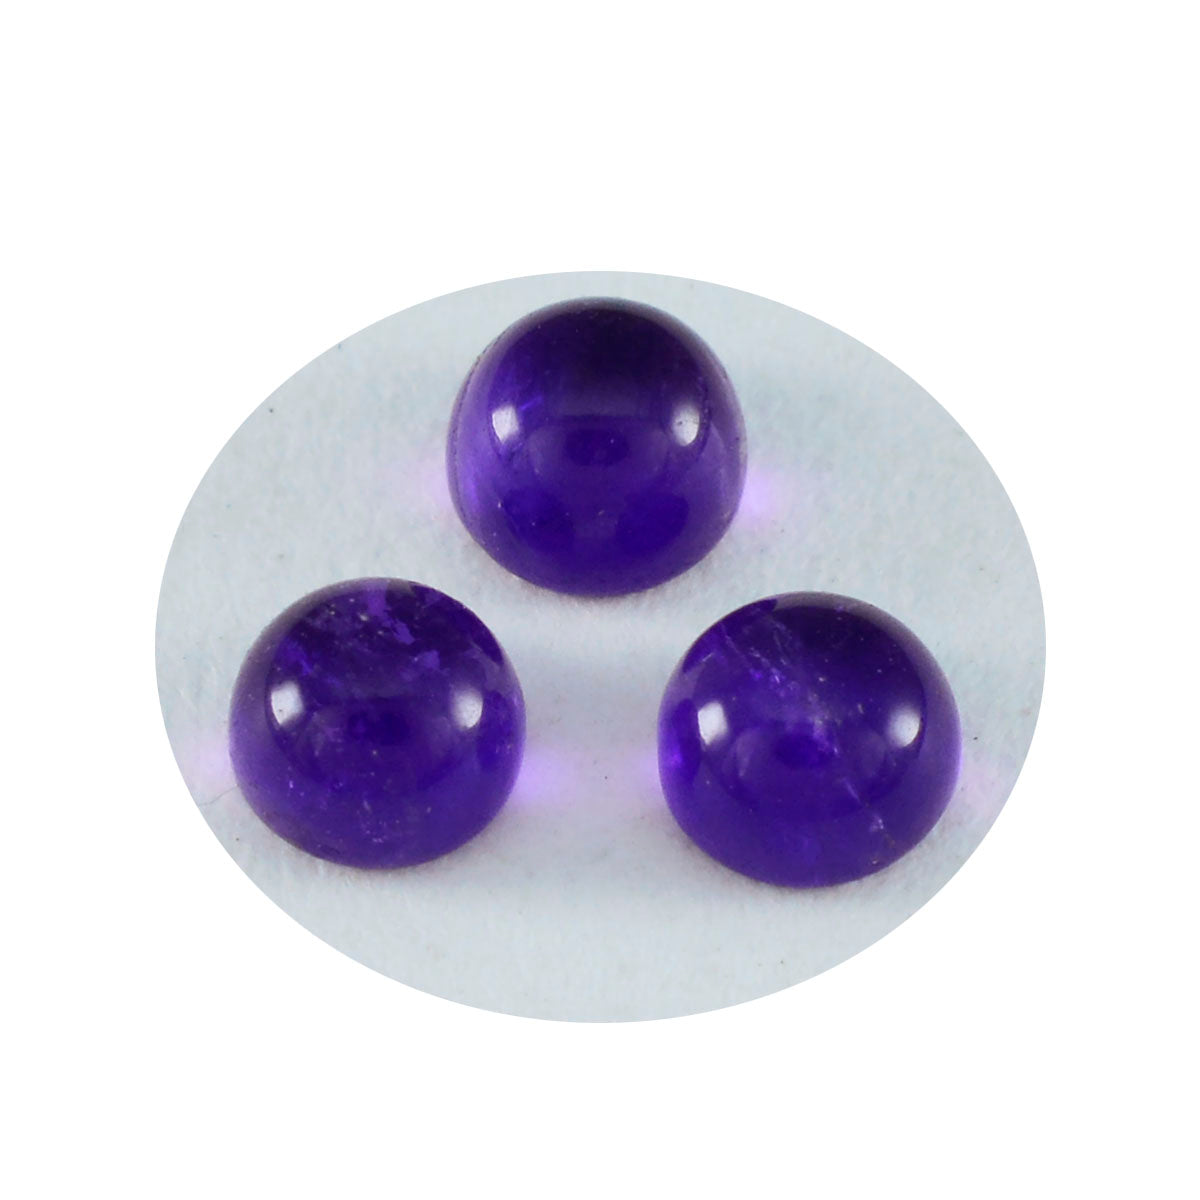 riyogems 1 шт. фиолетовый аметист кабошон 6x6 мм круглой формы, красивый качественный свободный камень